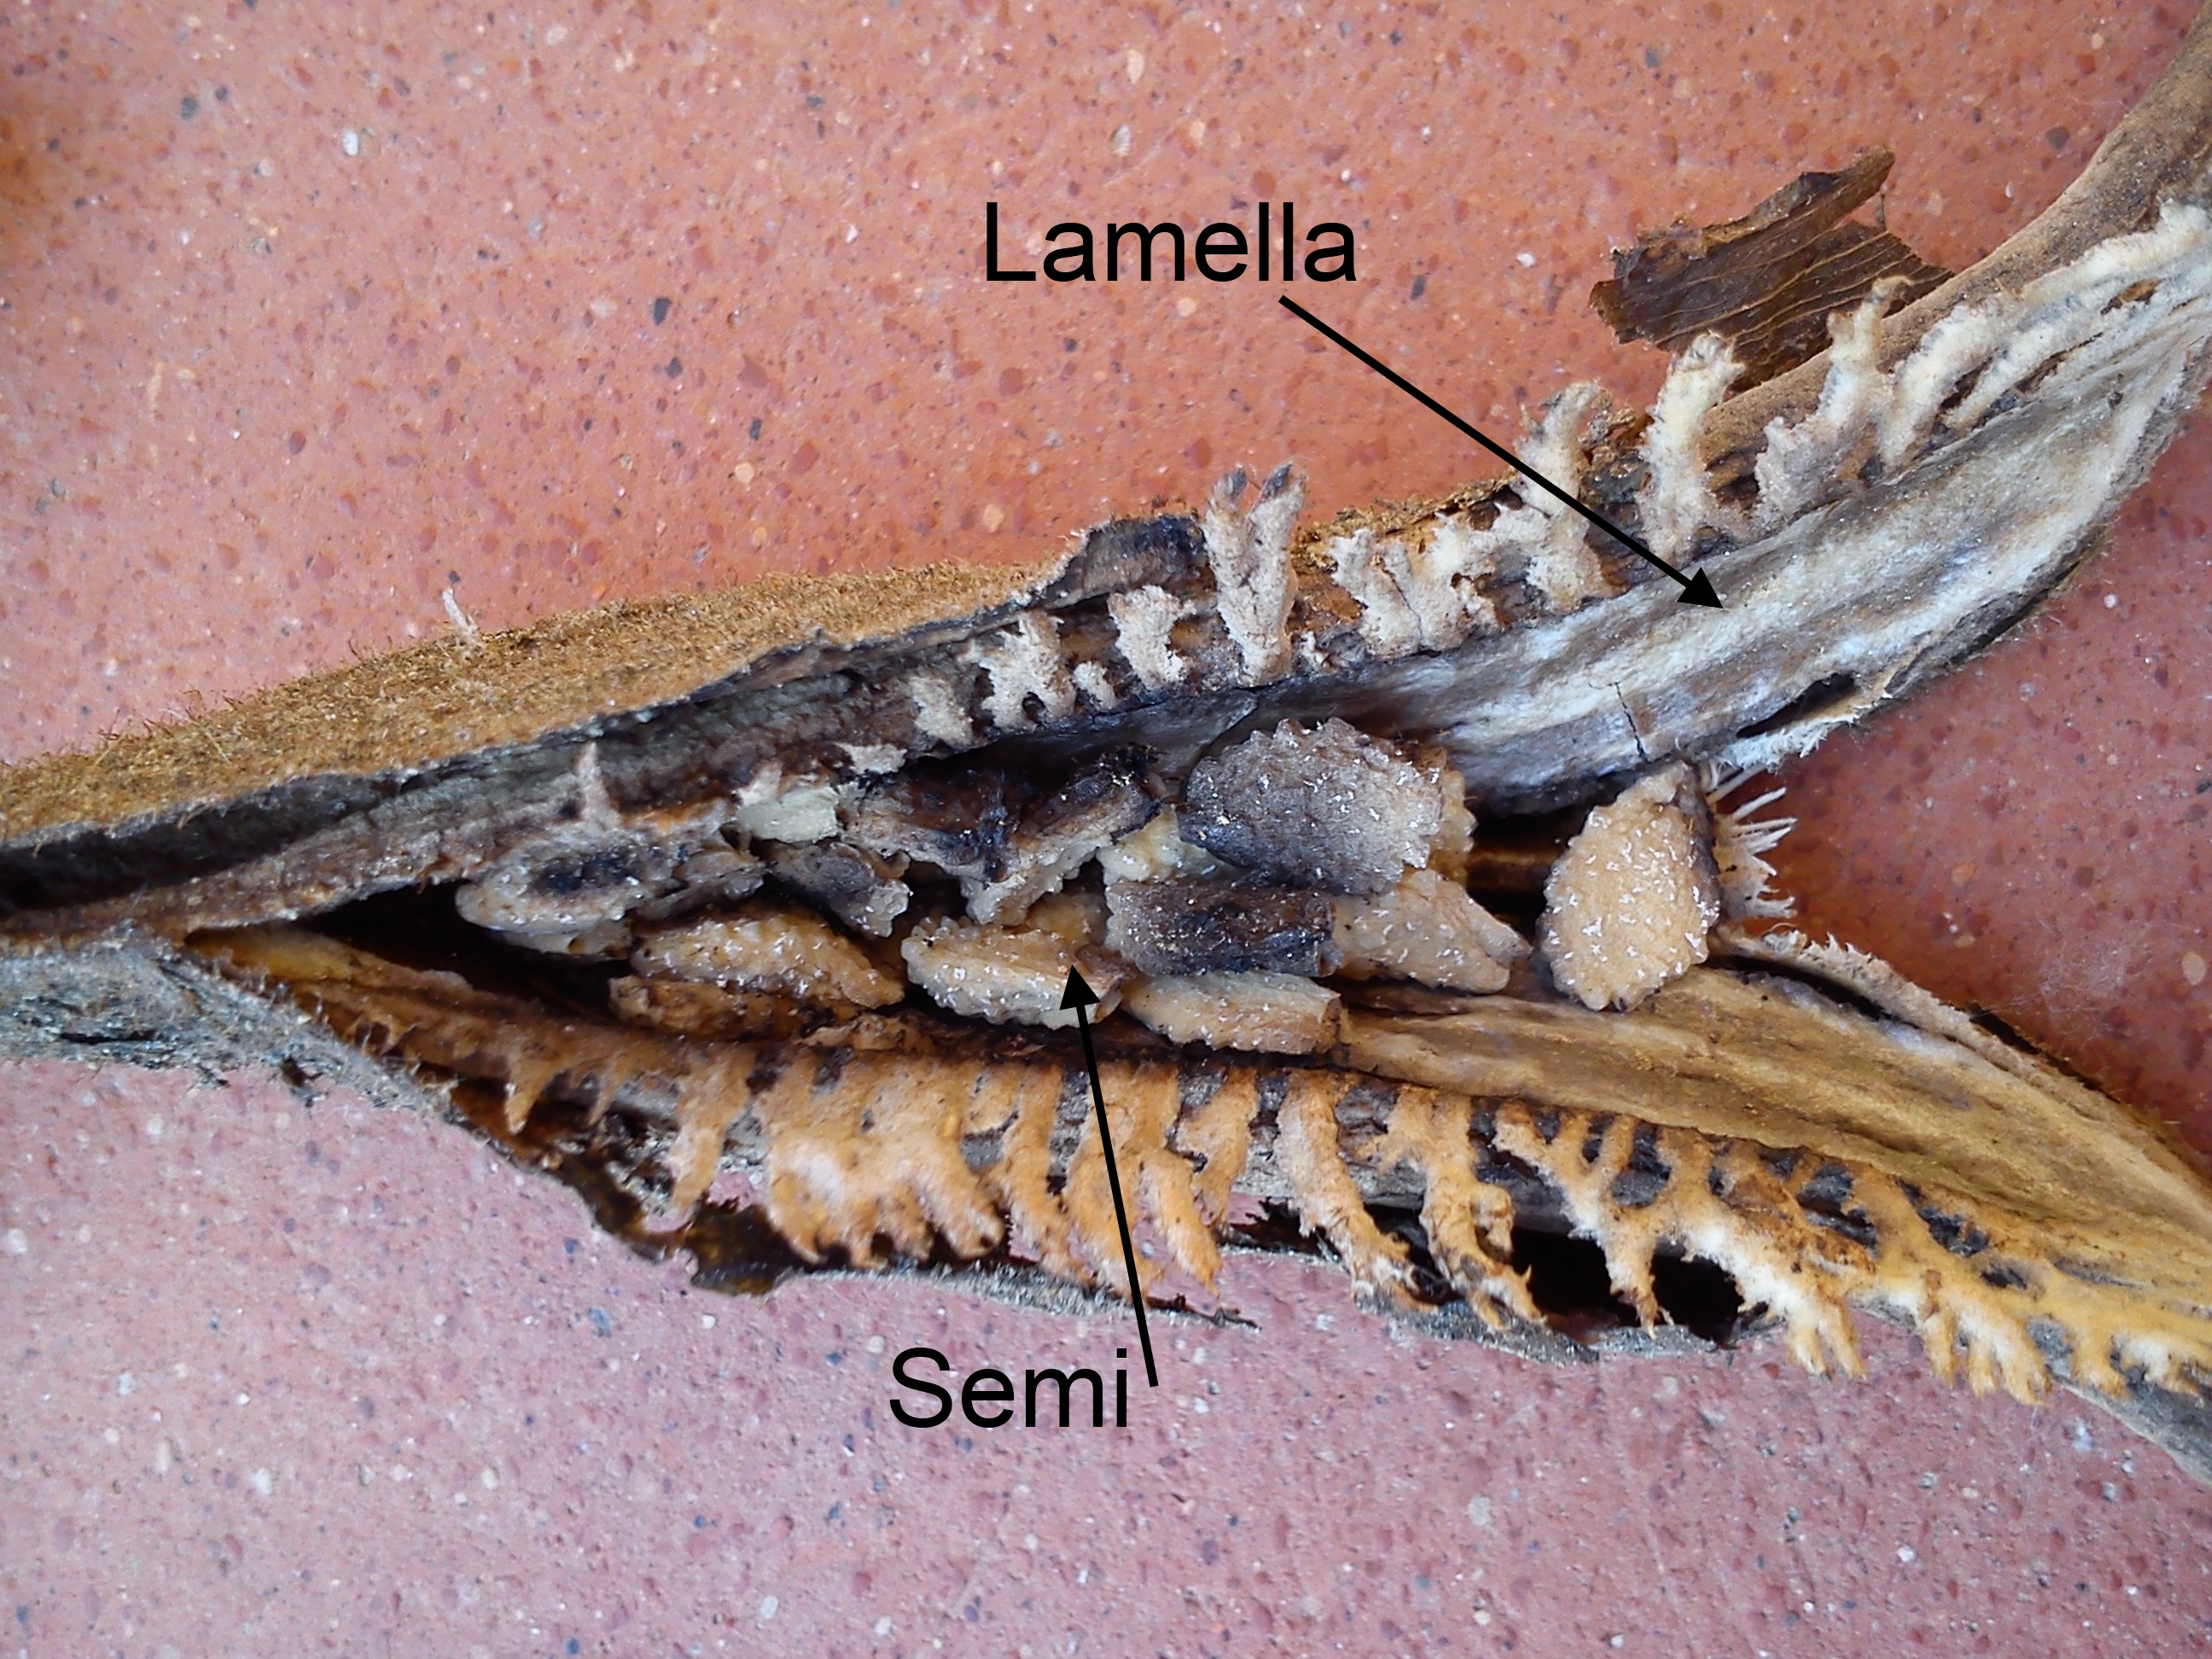 Drupa aperta (Proboscidea parviflora), semi superiori e lamella.